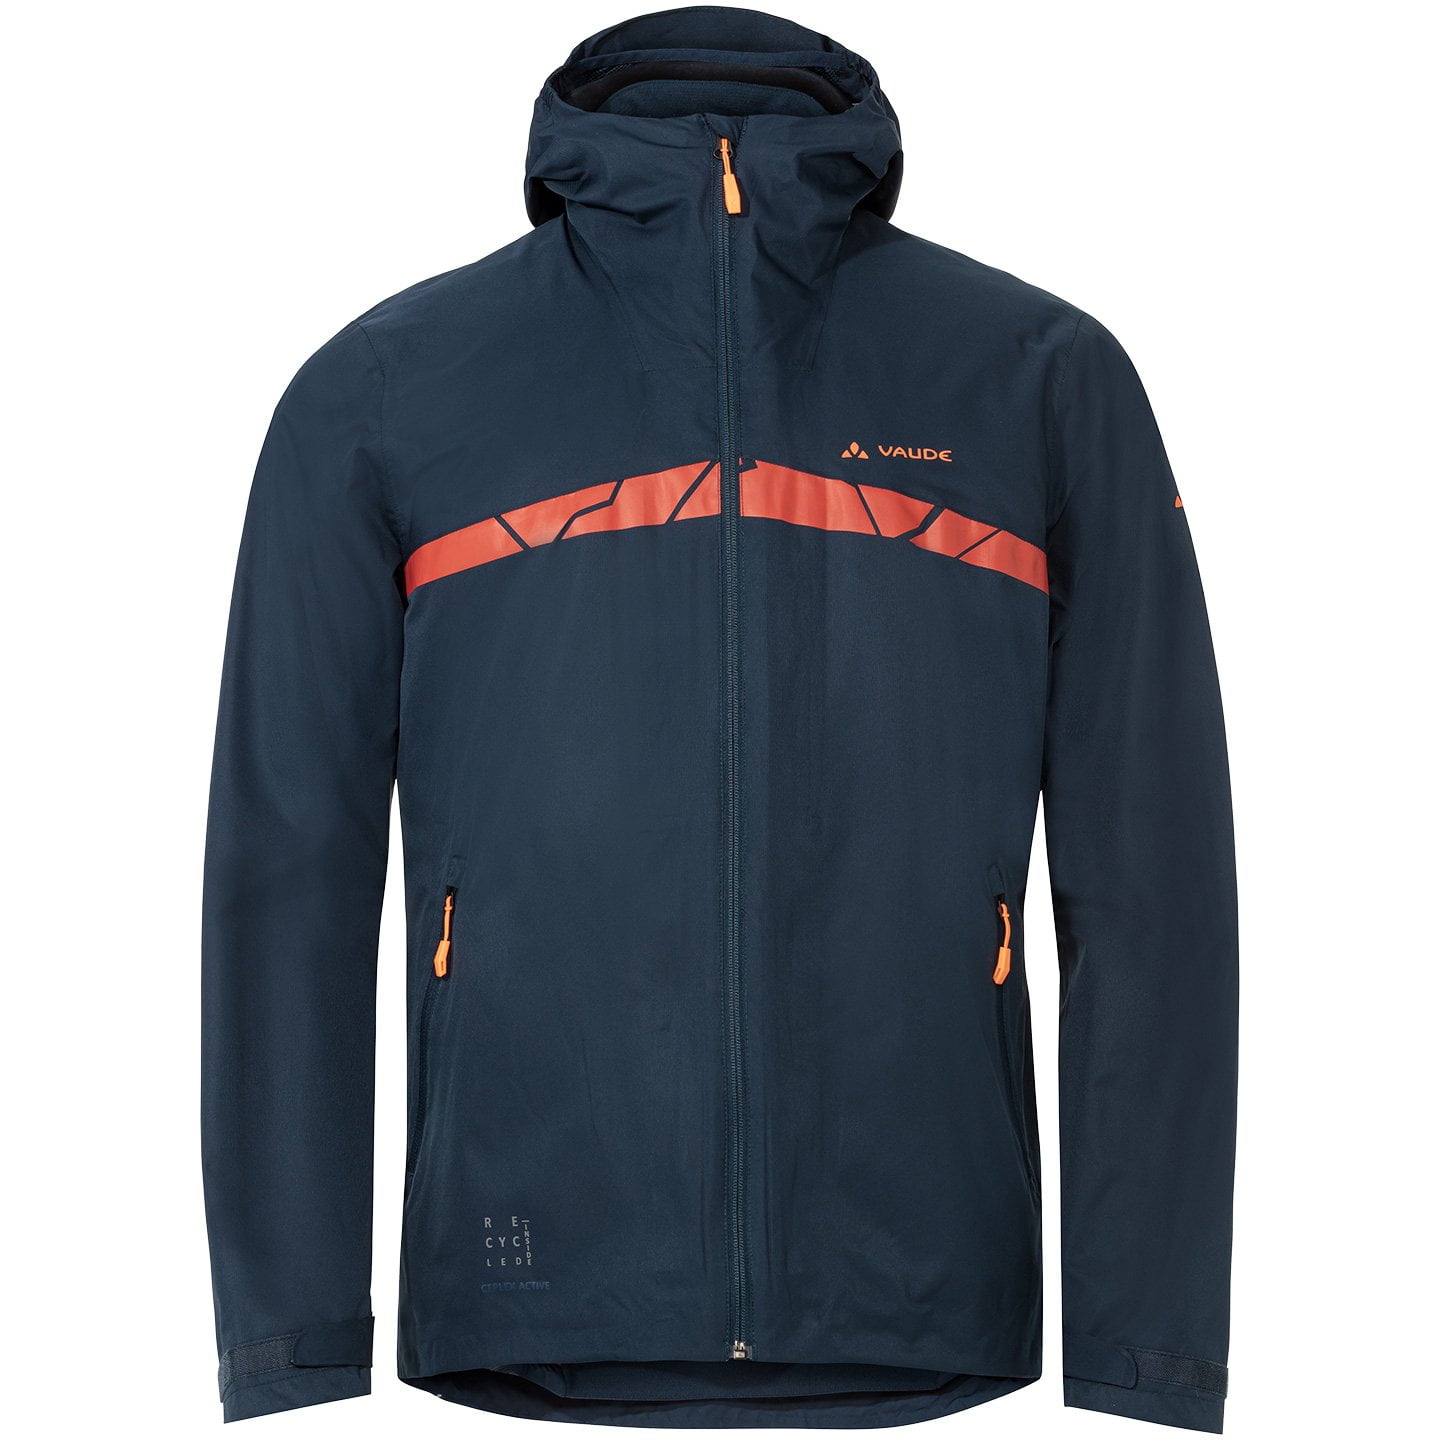 VAUDE MTB bike jacket Moab All Year 3in1 Waterproof Jacket, for men, size XL, Bike jacket, Rainwear